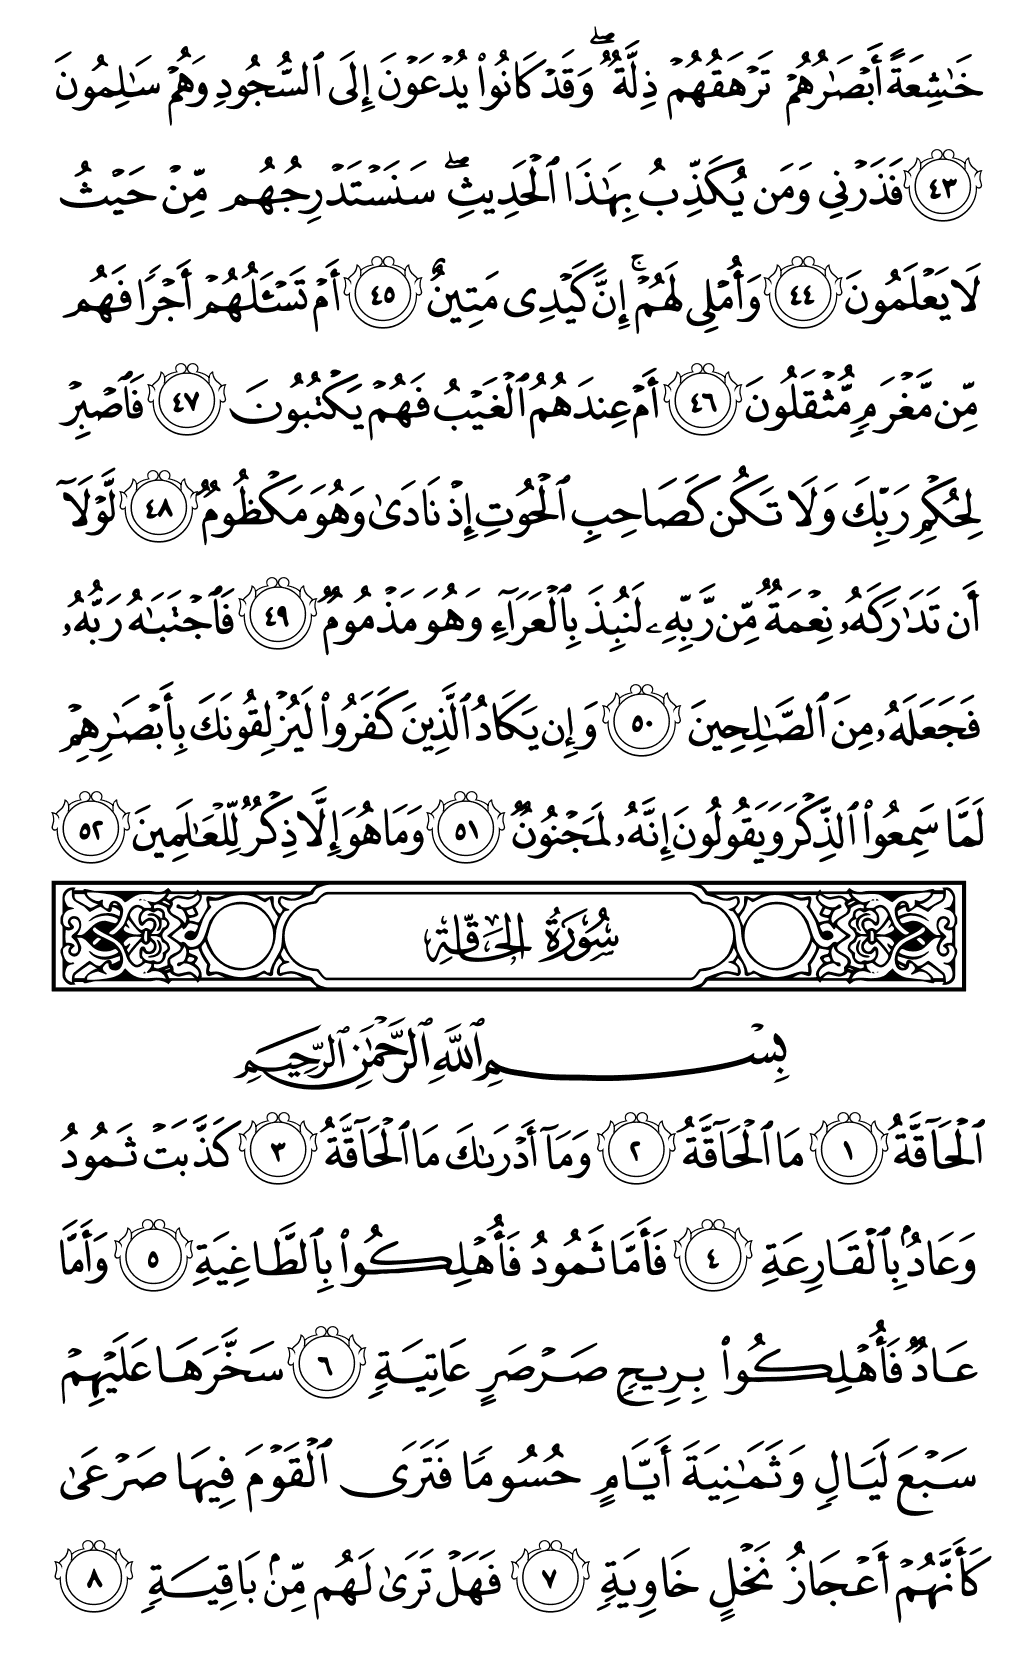 الصفحة رقم 566 من القرآن الكريم